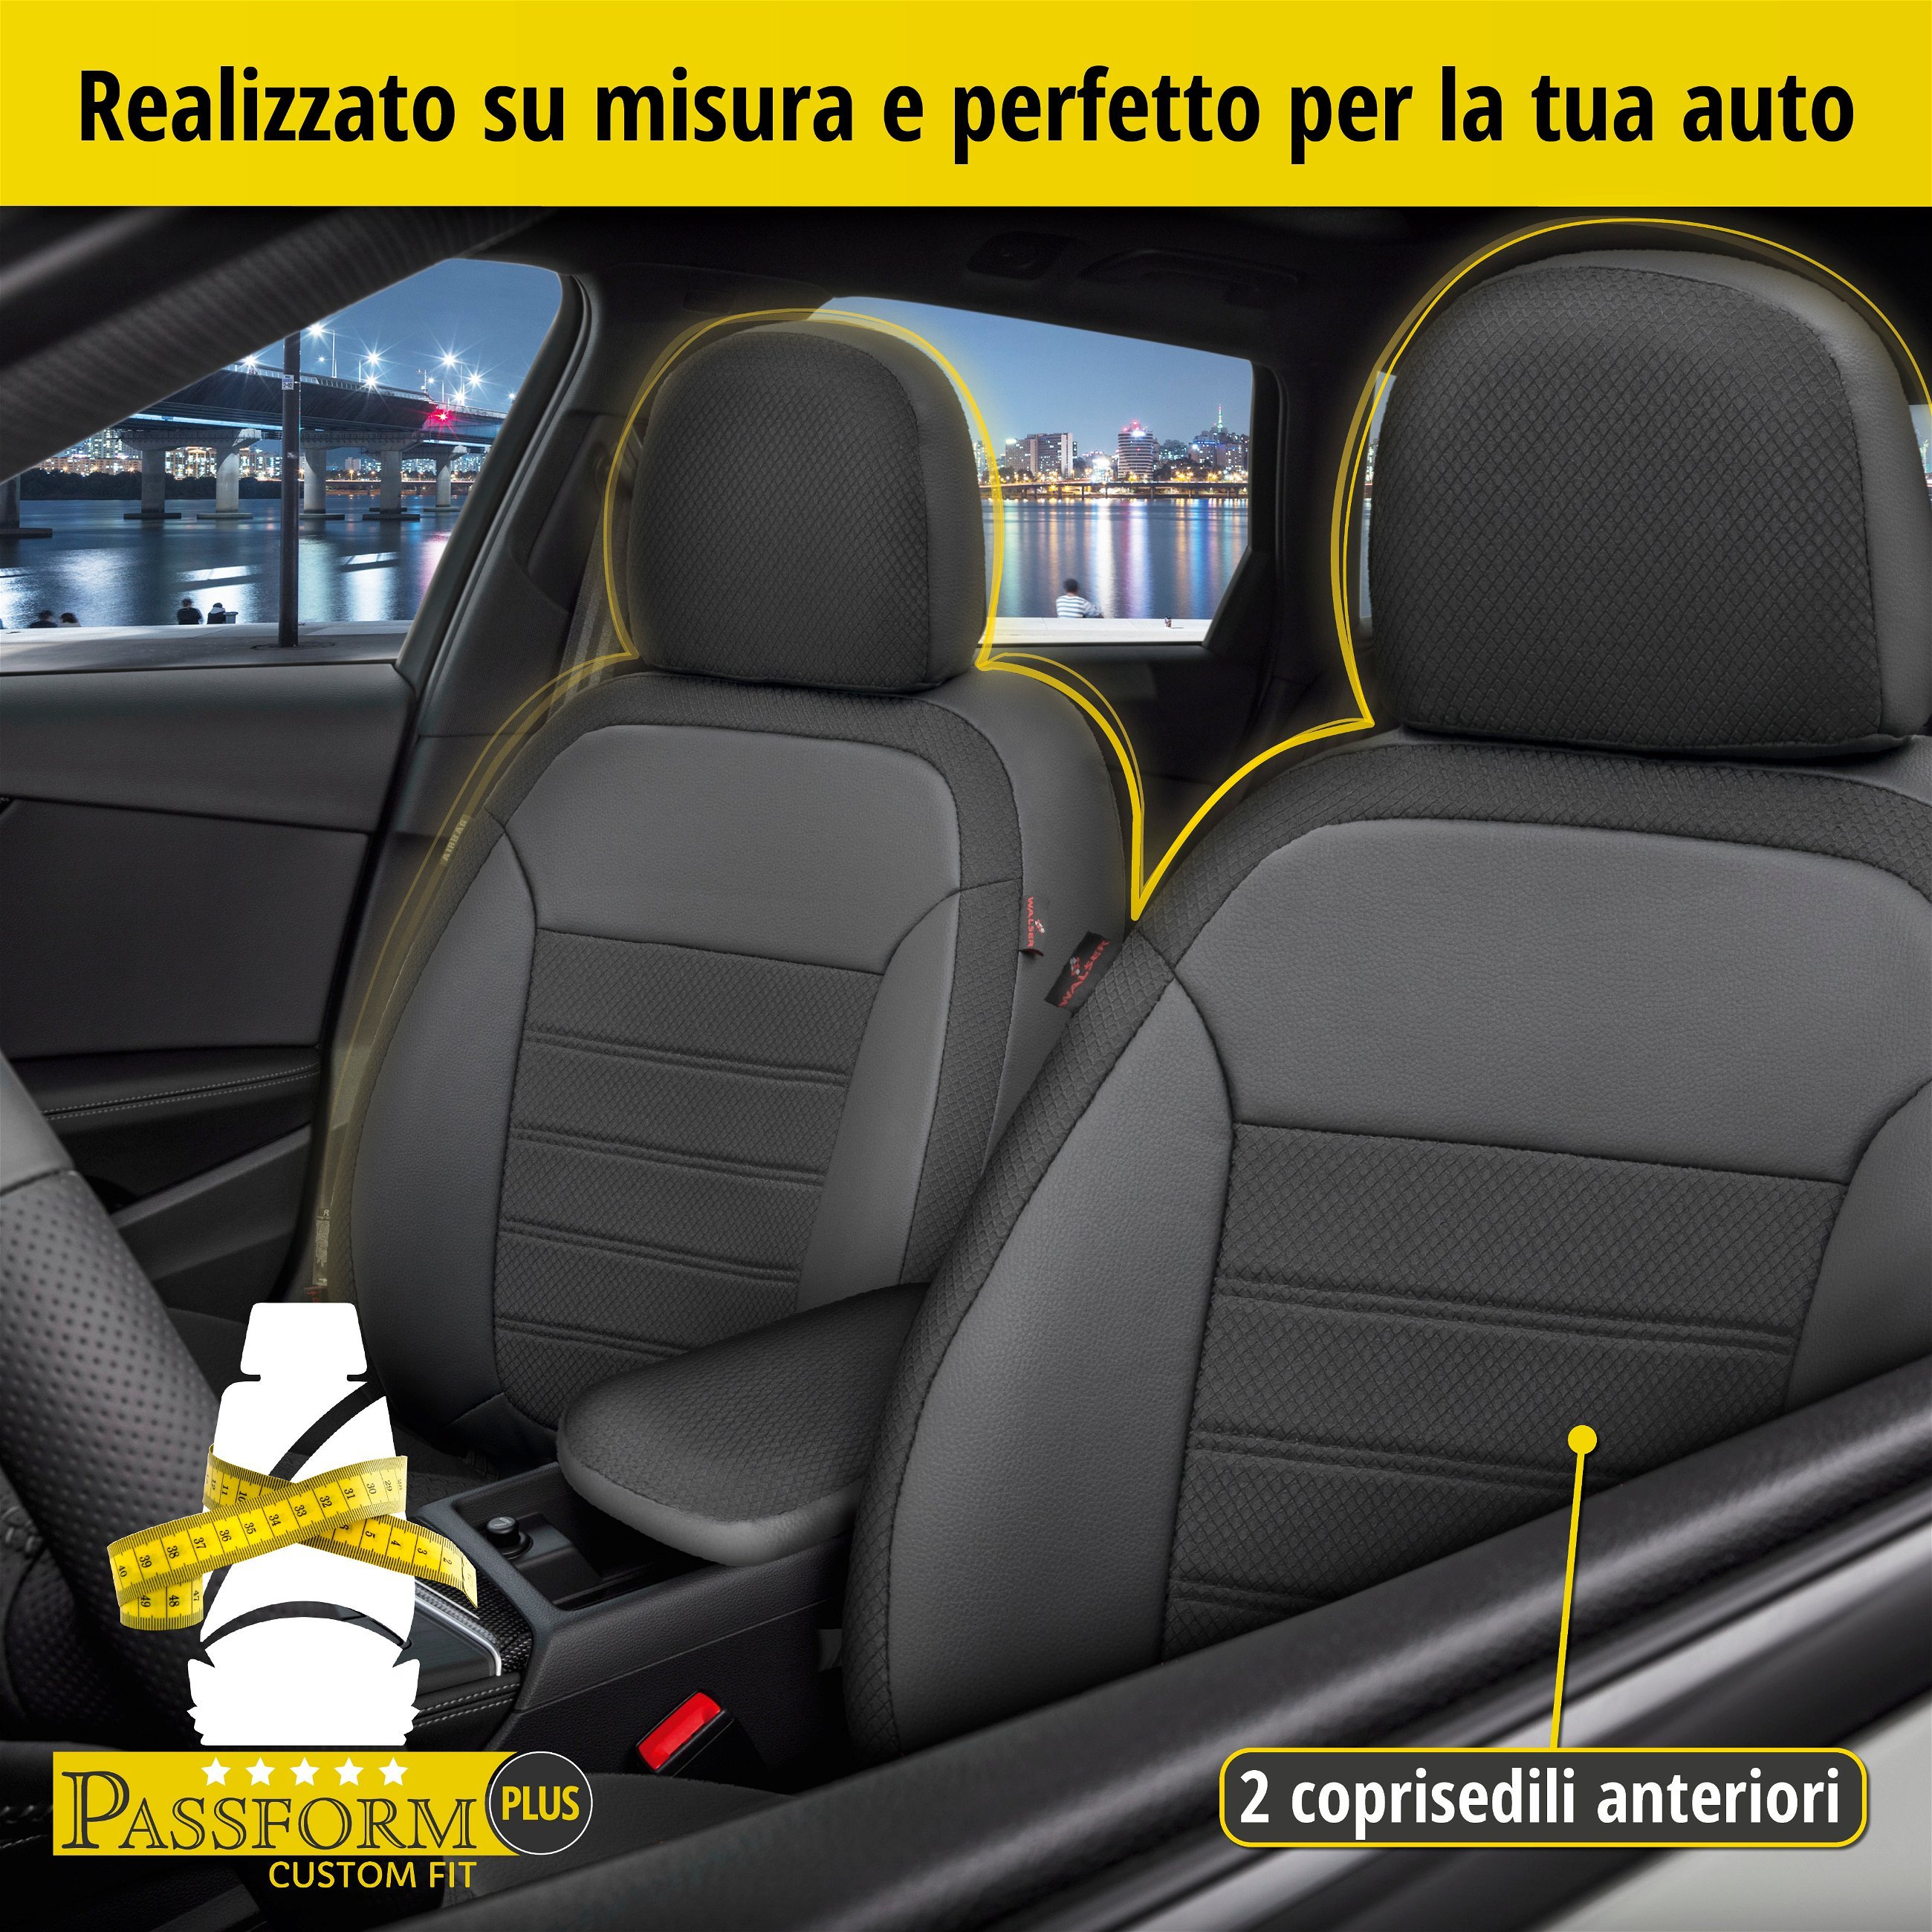 Coprisedili Aversa per Opel Corsa D (S07) 07/2006-08/2014, 2 coprisedili singoli per sedili normali